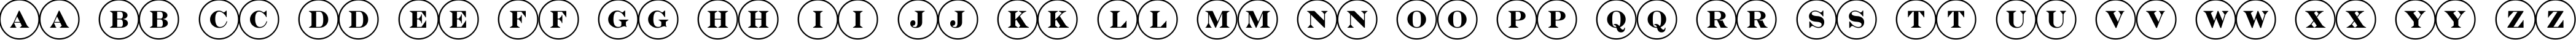 Пример написания английского алфавита шрифтом a_DiscoSerif